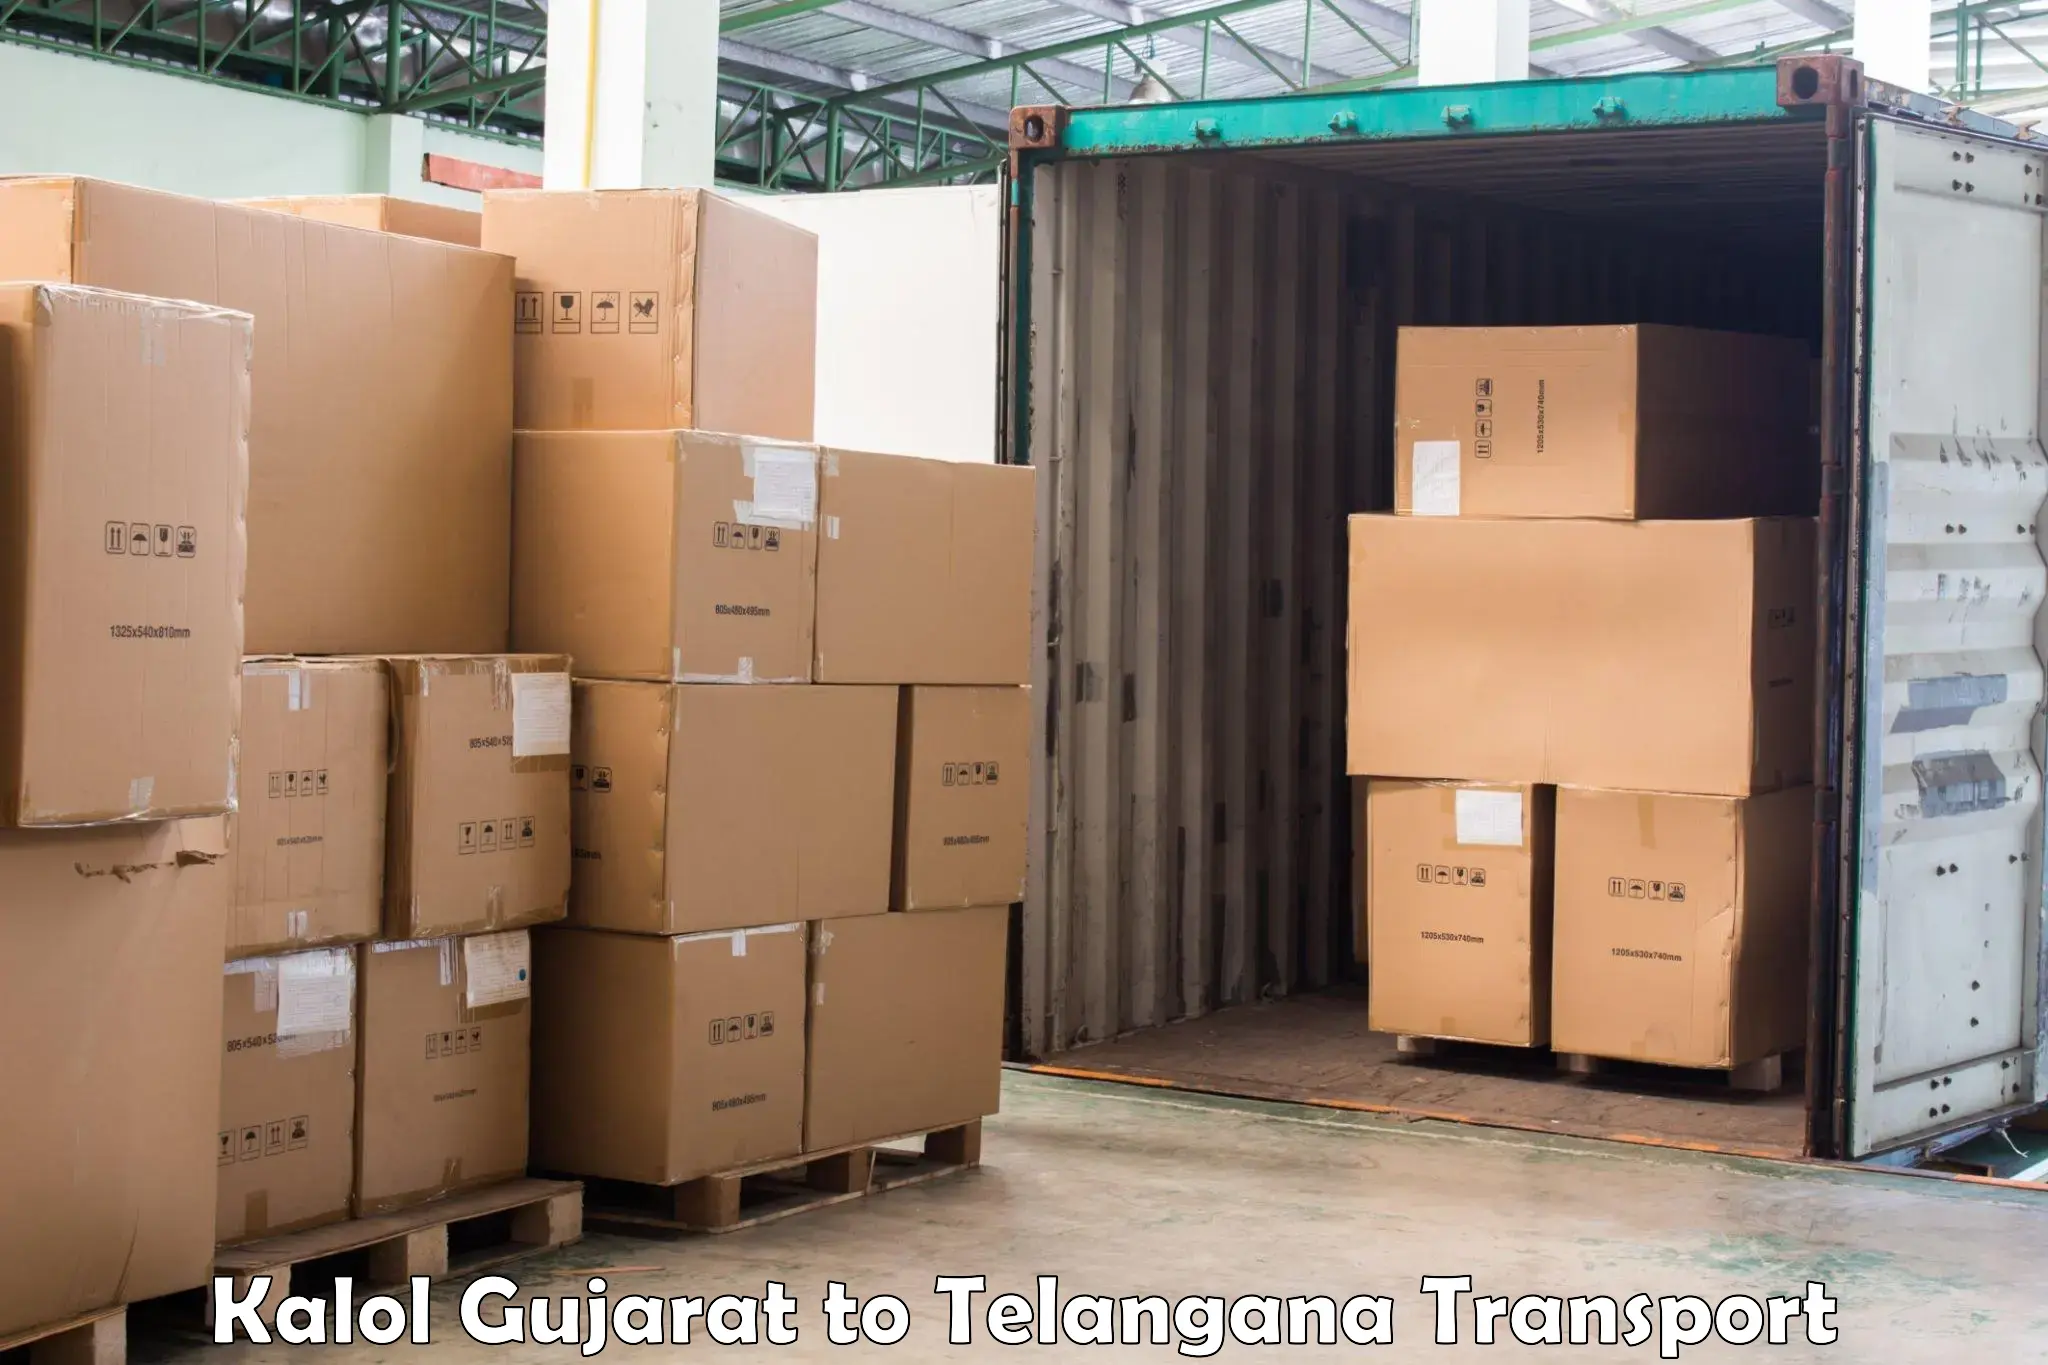 Cargo train transport services Kalol Gujarat to Shadnagar